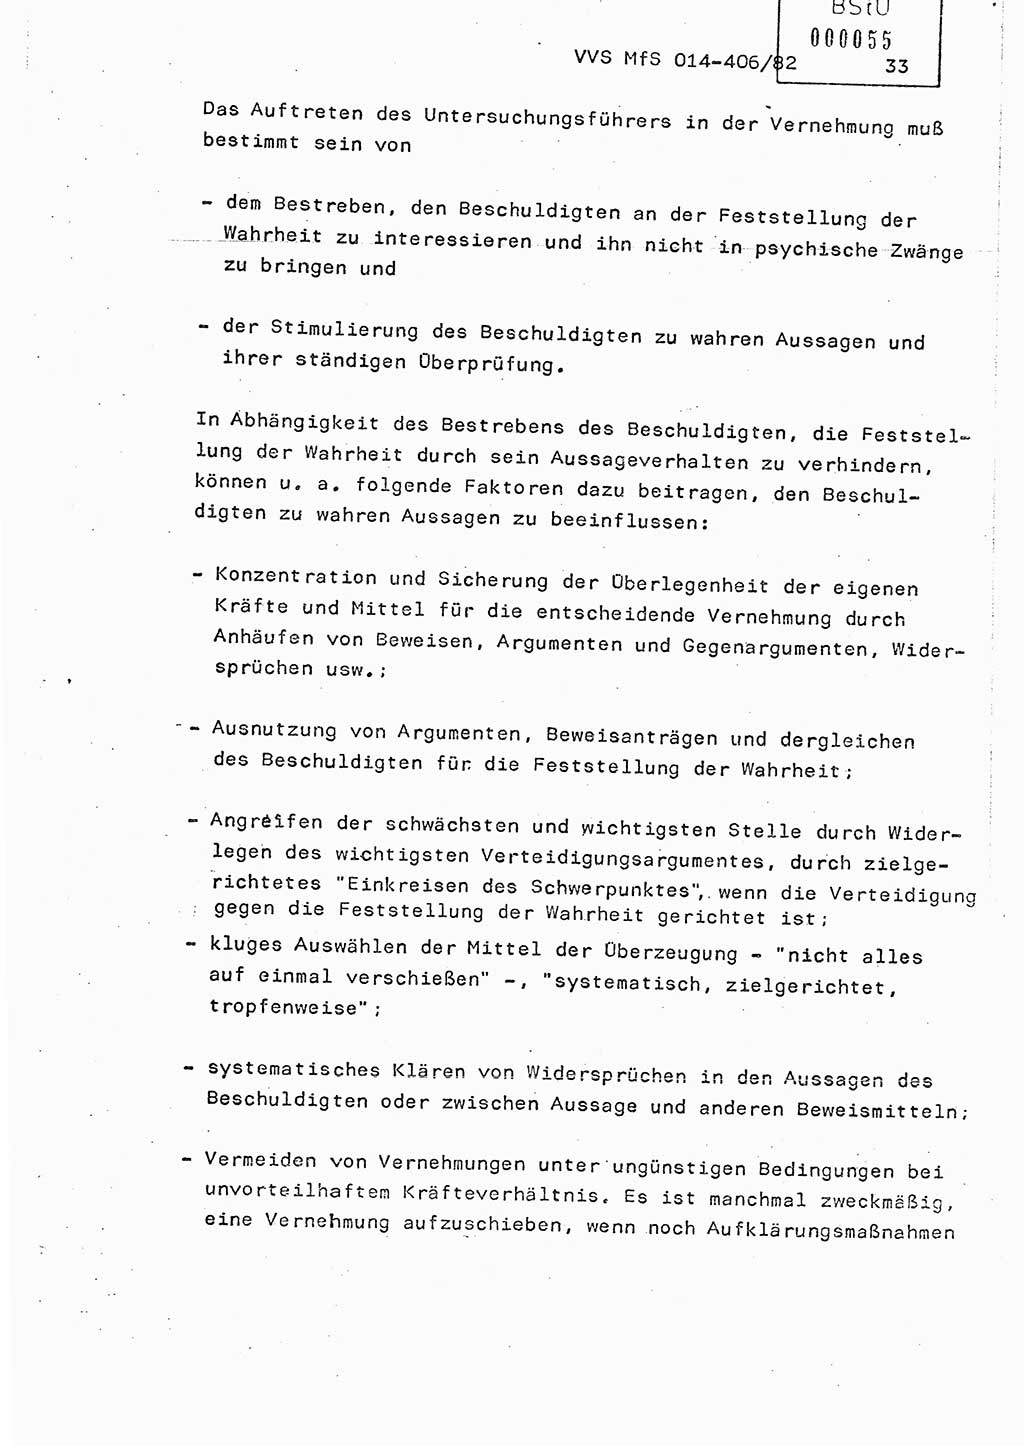 Lektion Ministerium für Staatssicherheit (MfS) [Deutsche Demokratische Republik (DDR)], Hauptabteilung (HA) Ⅸ, Vertrauliche Verschlußsache (VVS) o014-406/82, Berlin 1982, Seite 33 (Lekt. MfS DDR HA Ⅸ VVS o014-406/82 1982, S. 33)